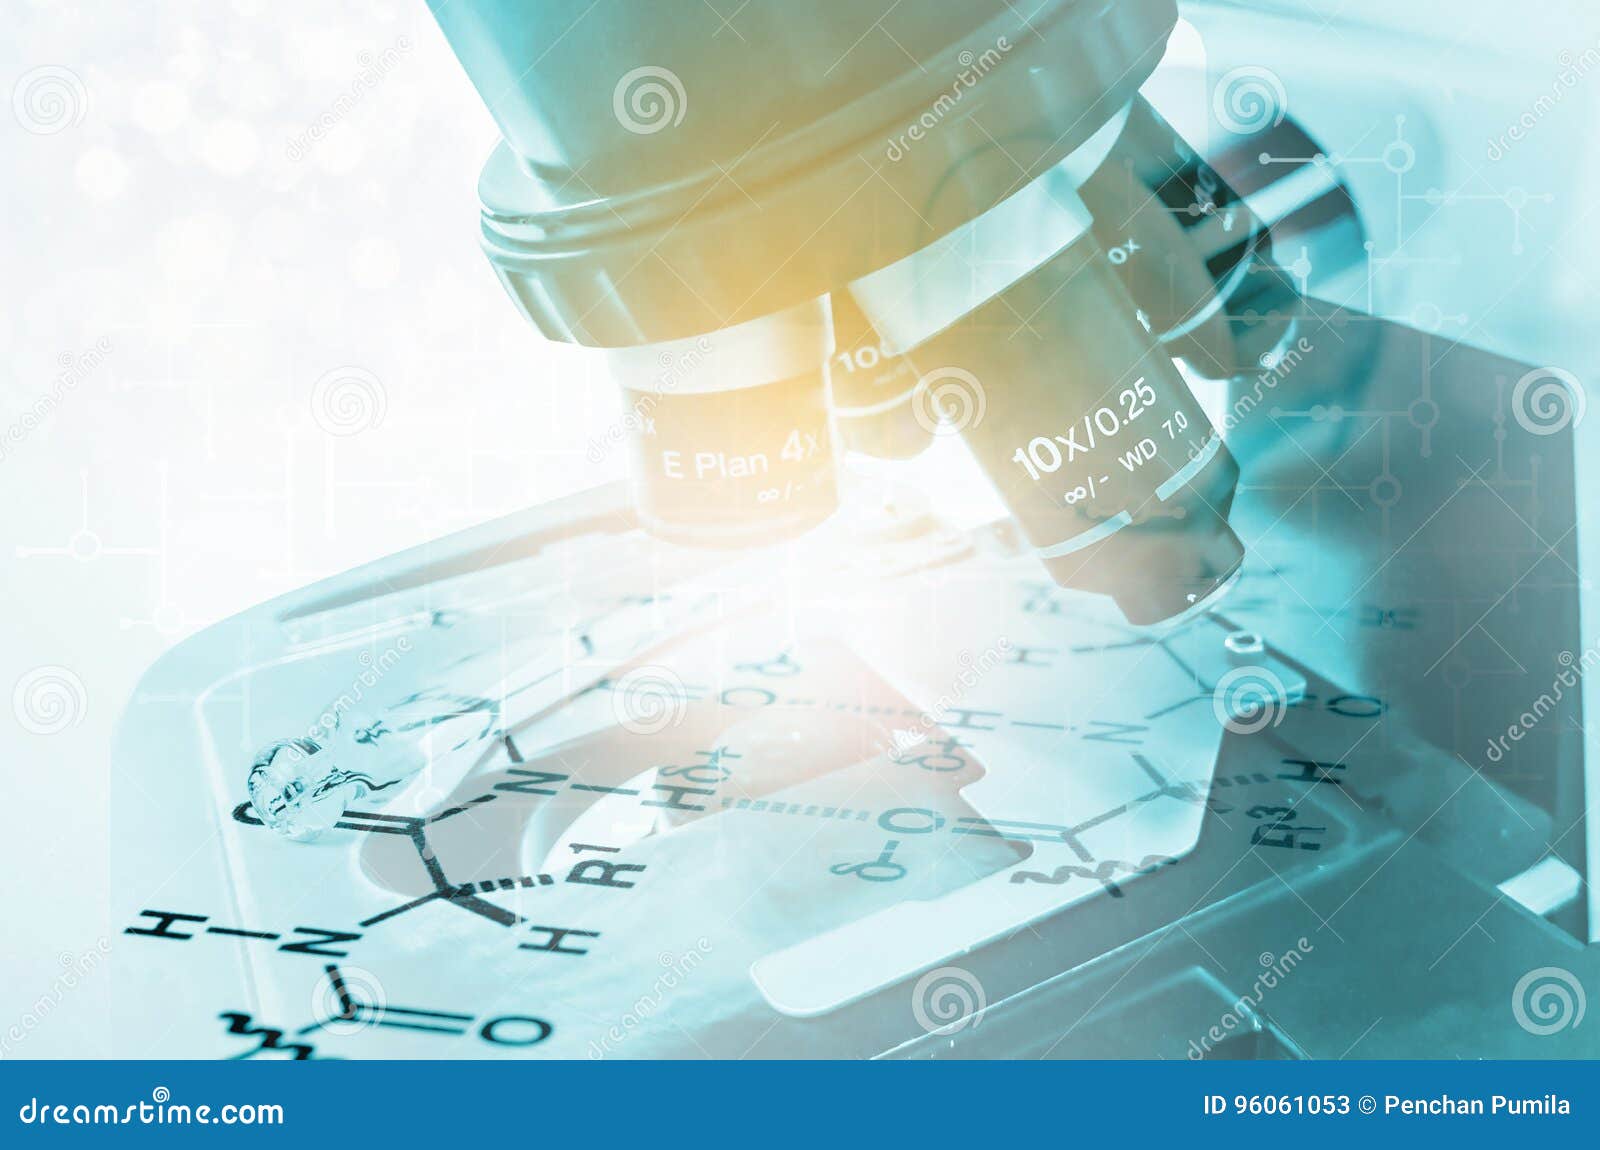 laboratory microscope. scientific and healthcare research